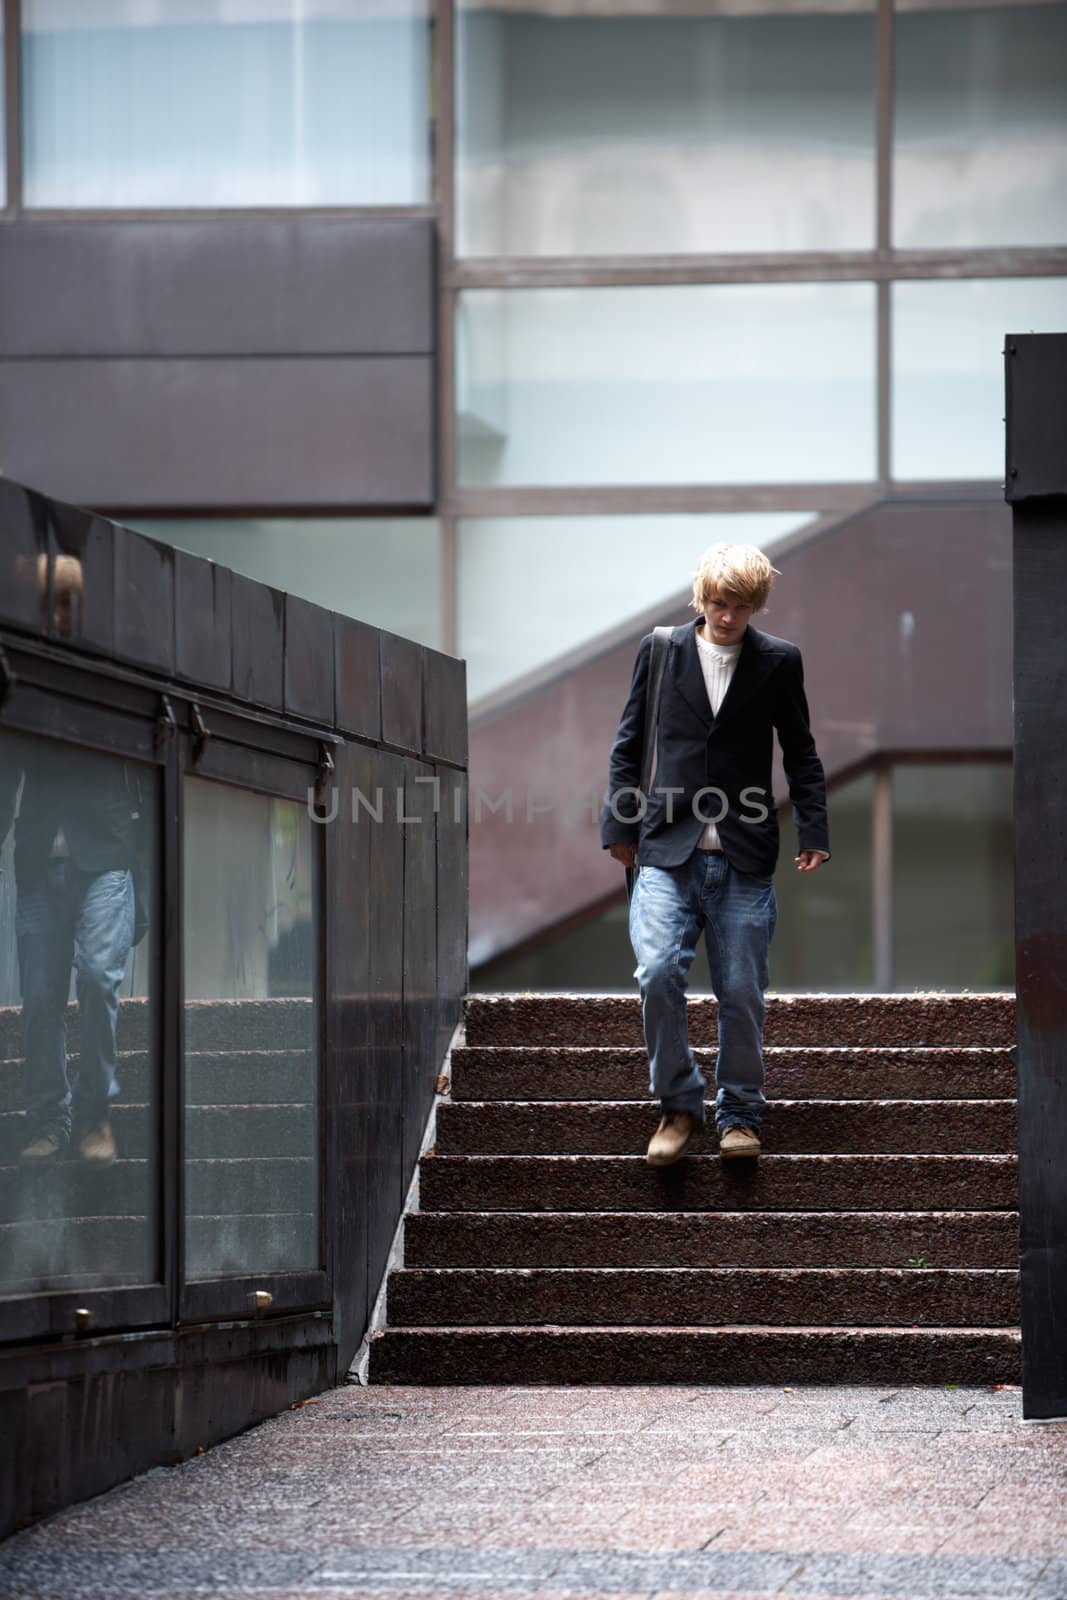 Teenage boy walking in stairway of building